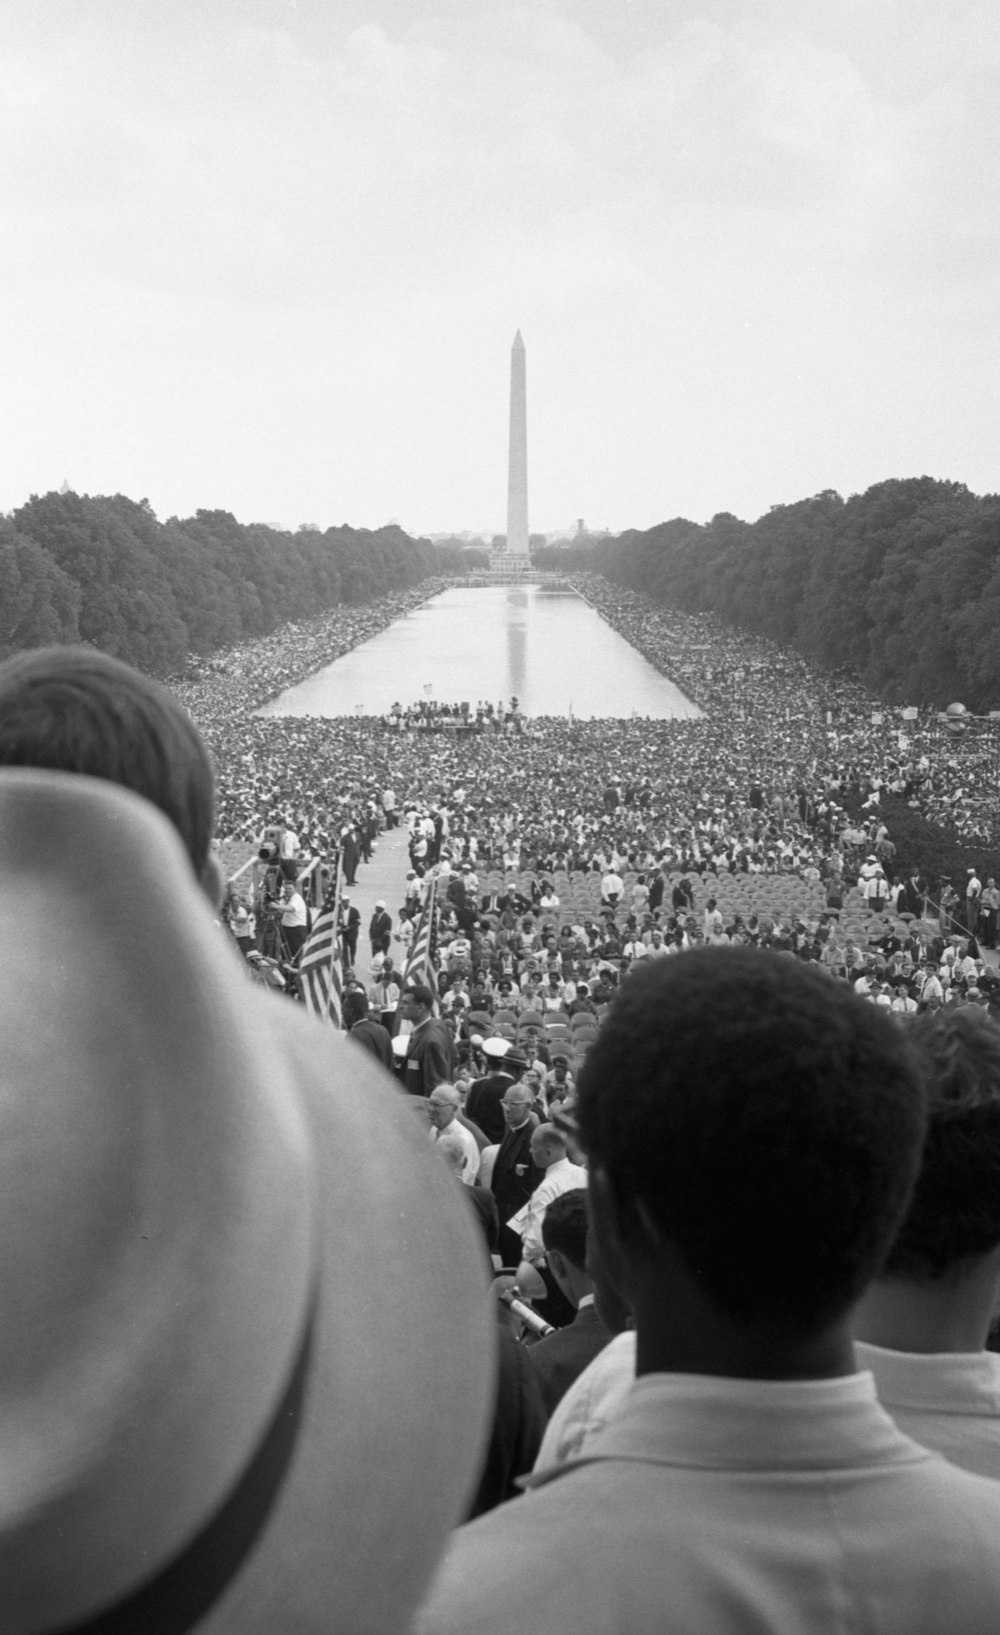 Eine Menschenmenge von Afroamerikanern und Weißen umringt den Reflecting Pool und geht weiter zum Washington Monument.